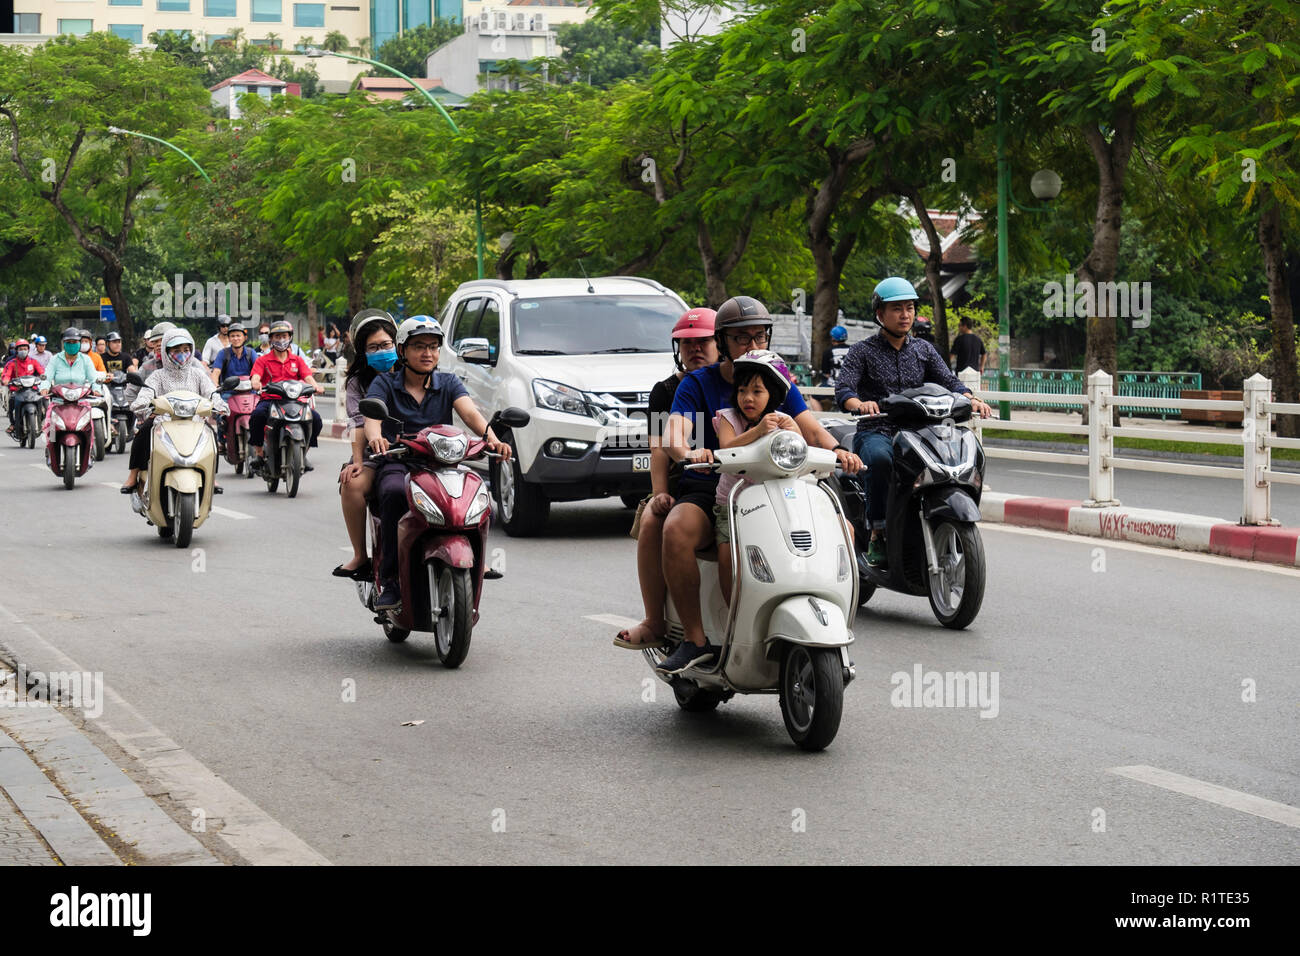 Street Scene mit Menschen, Motorräder und Motorroller auf einer geschäftigen Stadt Straße. Hanoi, Vietnam, Asien Stockfoto